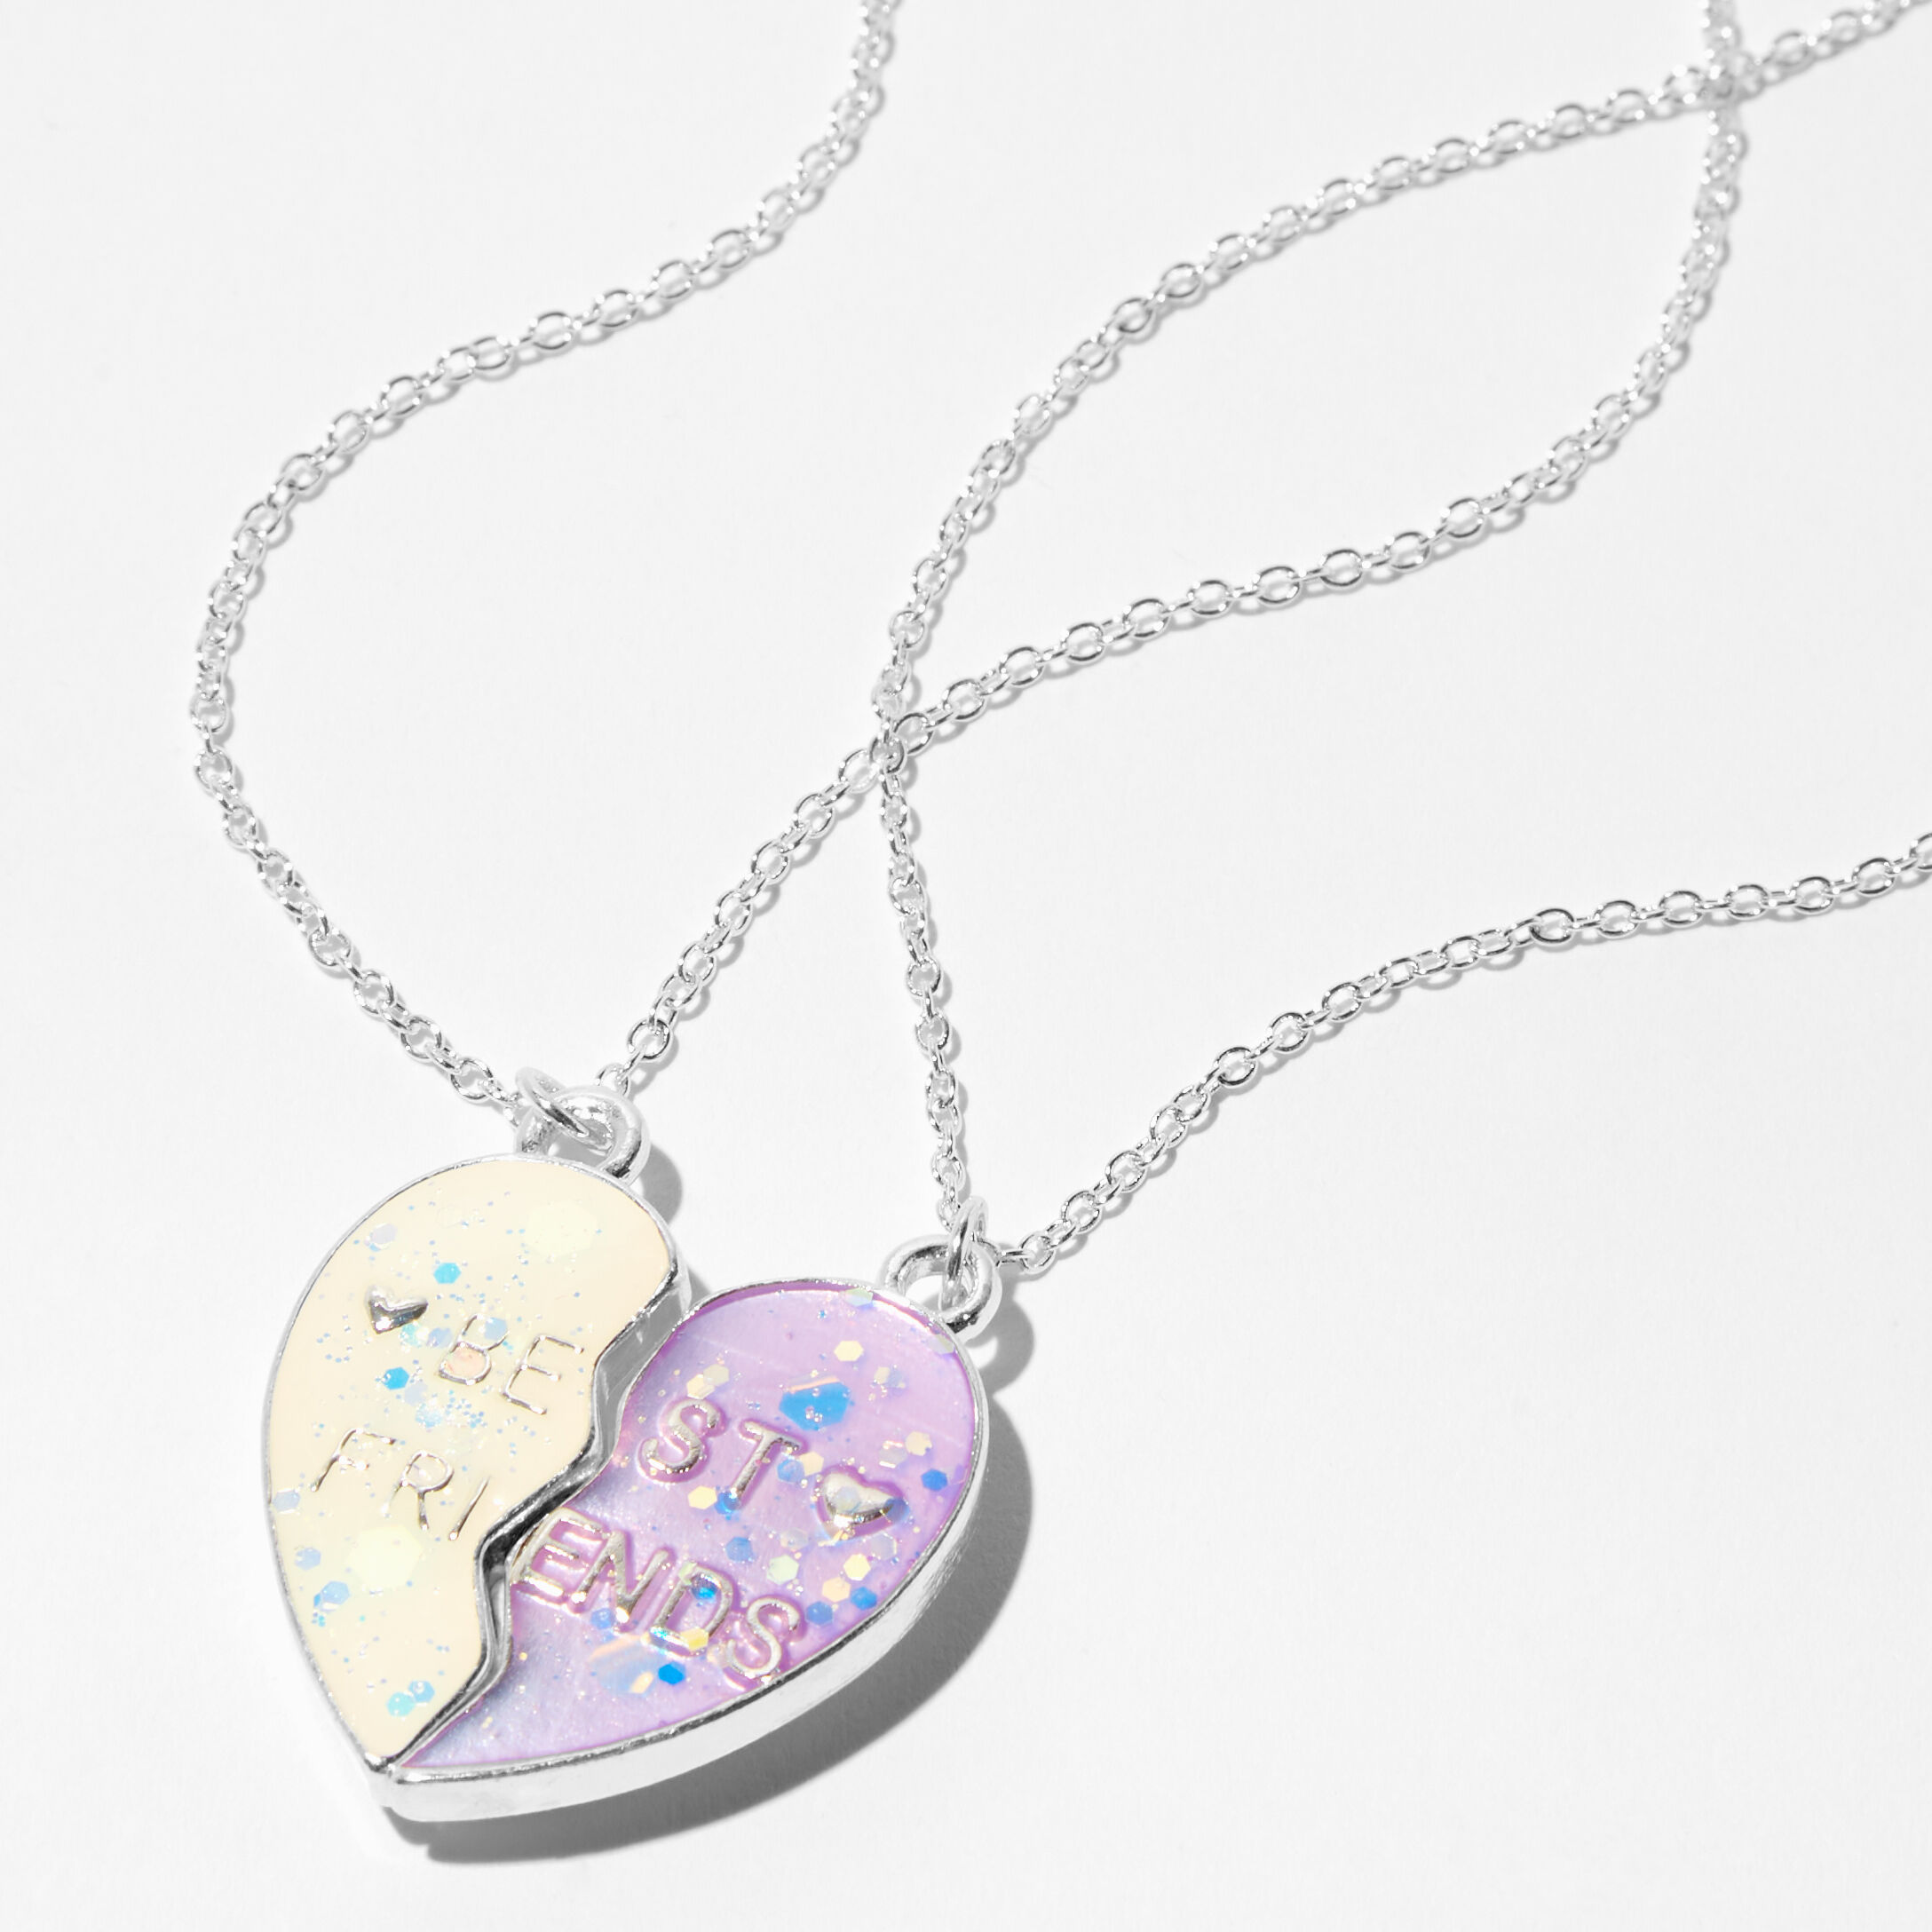 Gold Rectangle Zodiac Symbol Pendant Necklace - Gemini | Friend necklaces,  Friend jewelry, Best friend necklaces